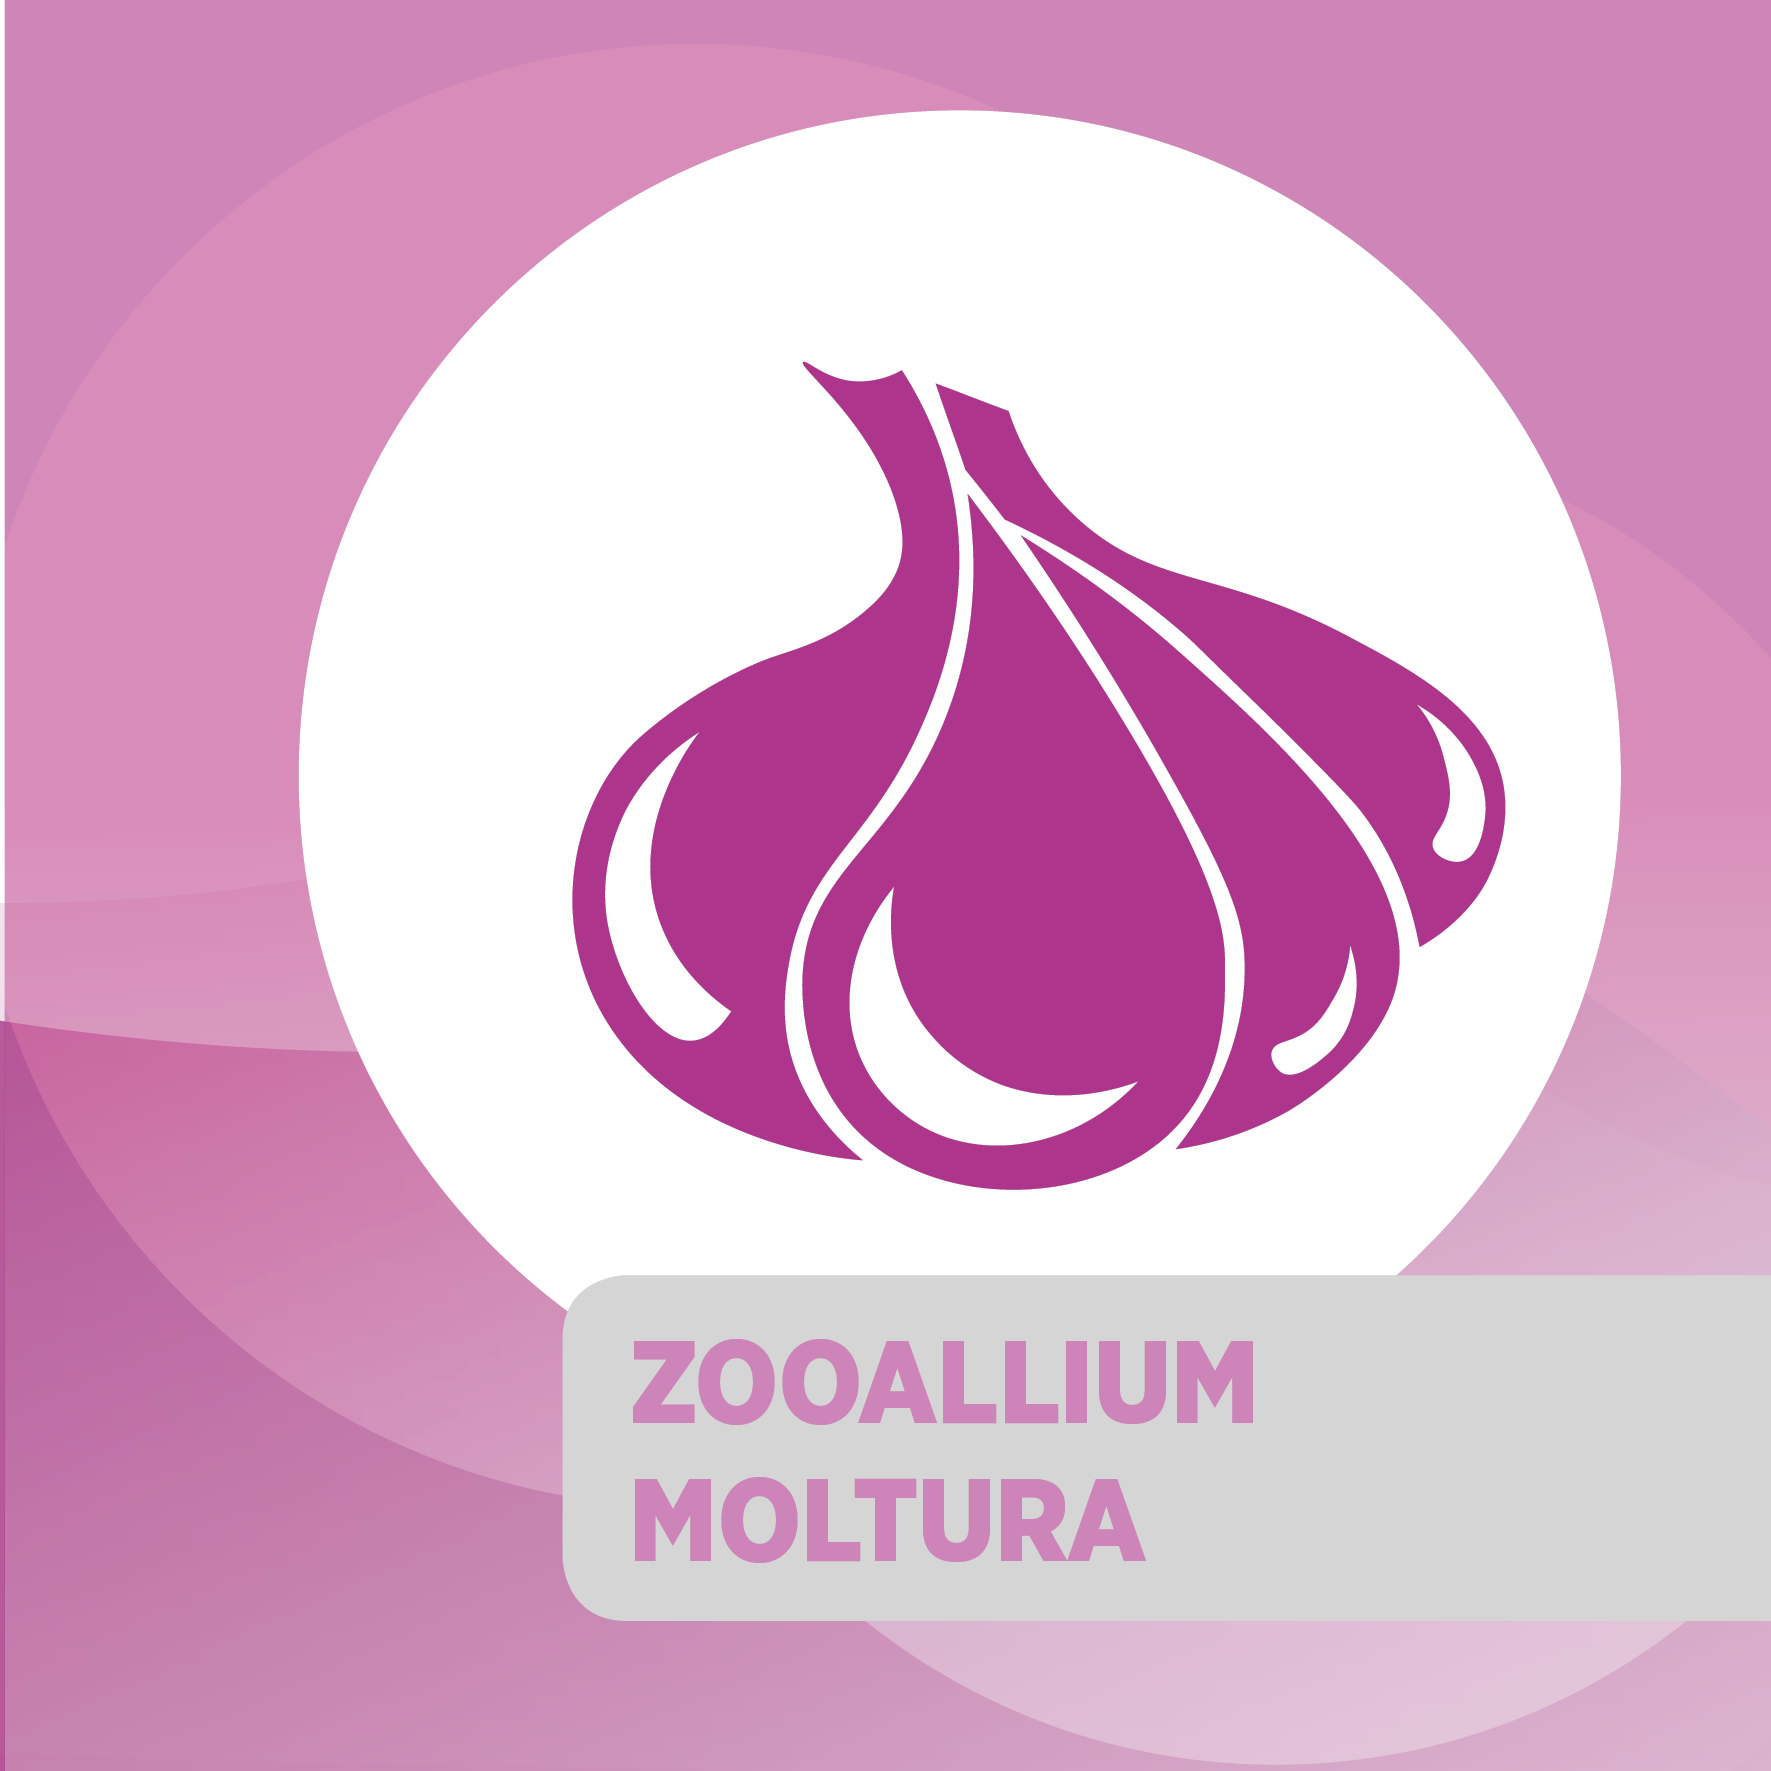 Zooallium Moltura